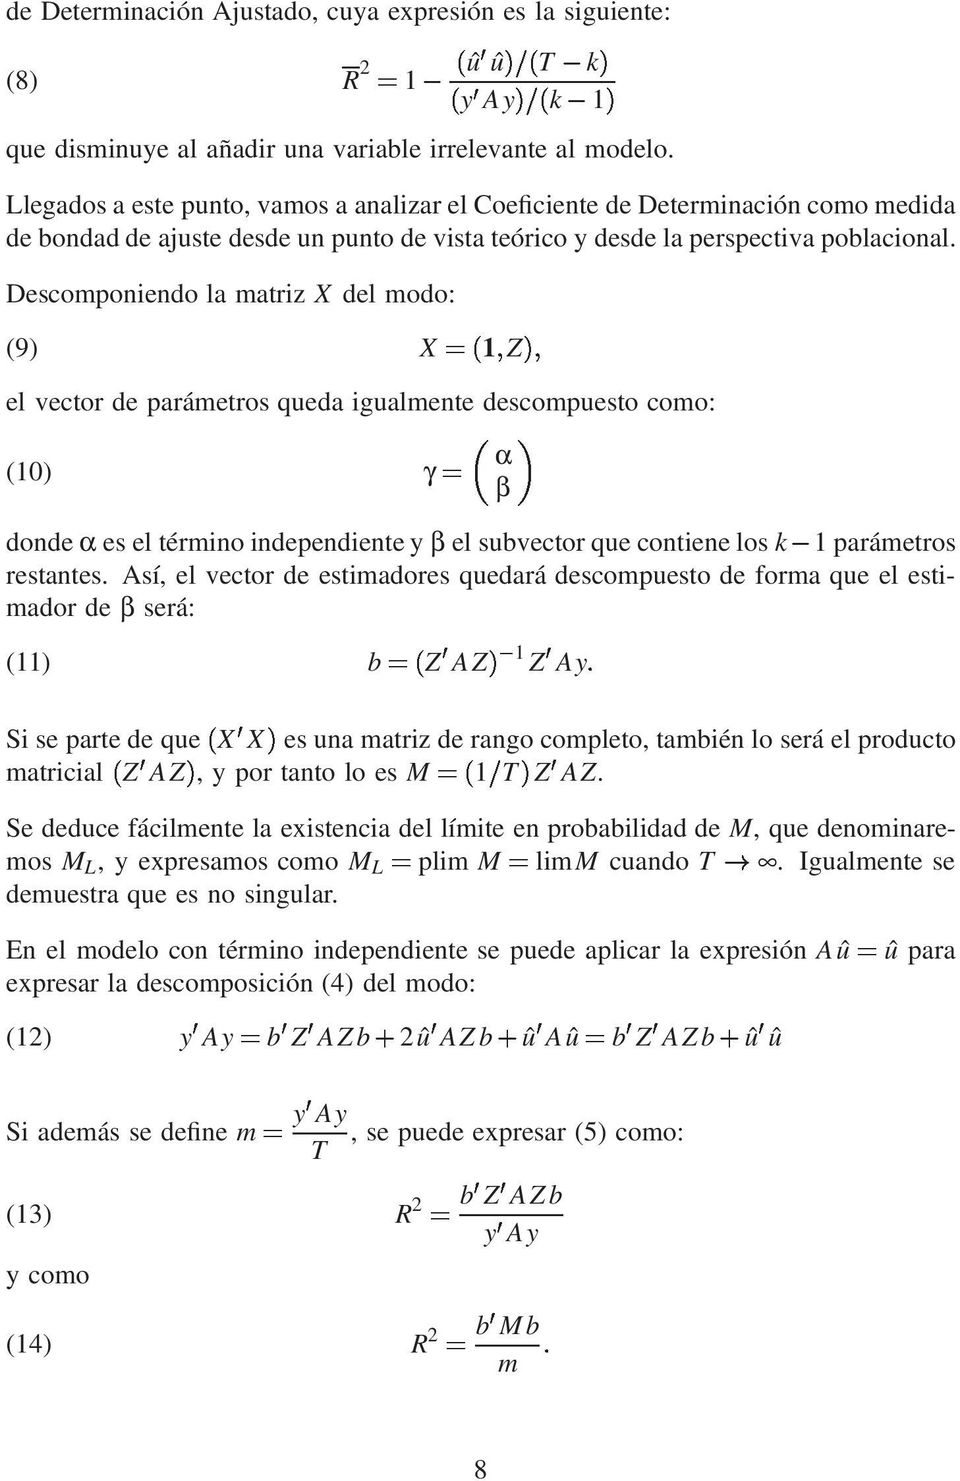 Descomponiendo la matriz X del modo: (9) el vector de parámetros queda igualmente descompuesto como: γ=α (10) donde α es el término independiente y β el subvector que contiene los k?